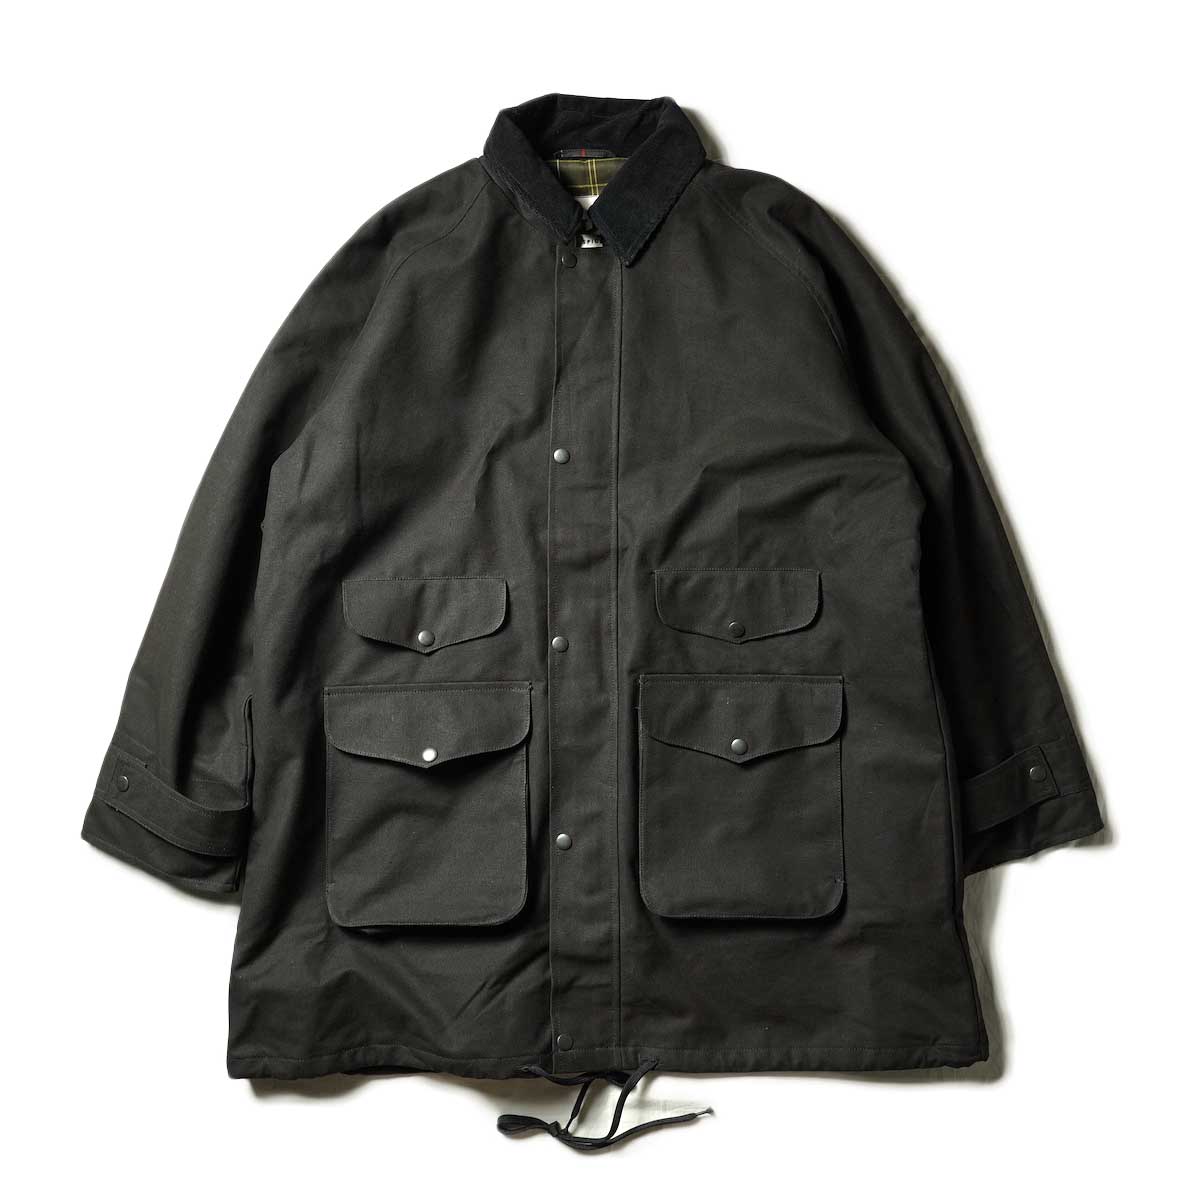 PORTRAITE / Classic Field Jacket Long - Canvas (Black)正面